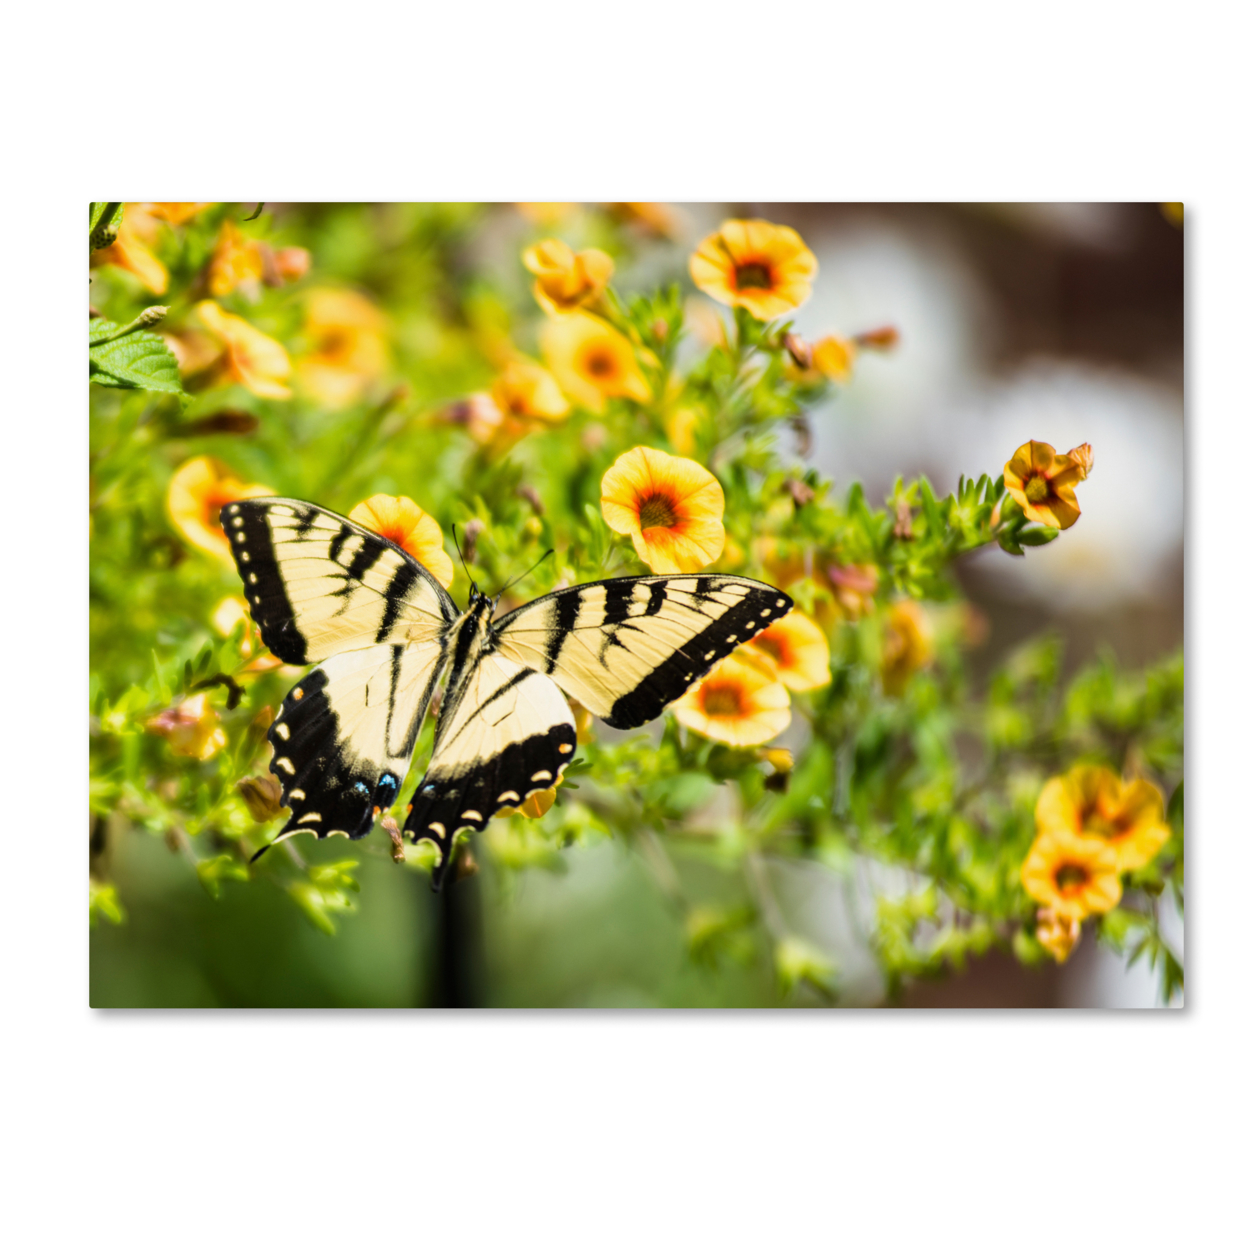 Kurt Shaffer 'Swallowtail Butterfly' Canvas Art 18 X 24